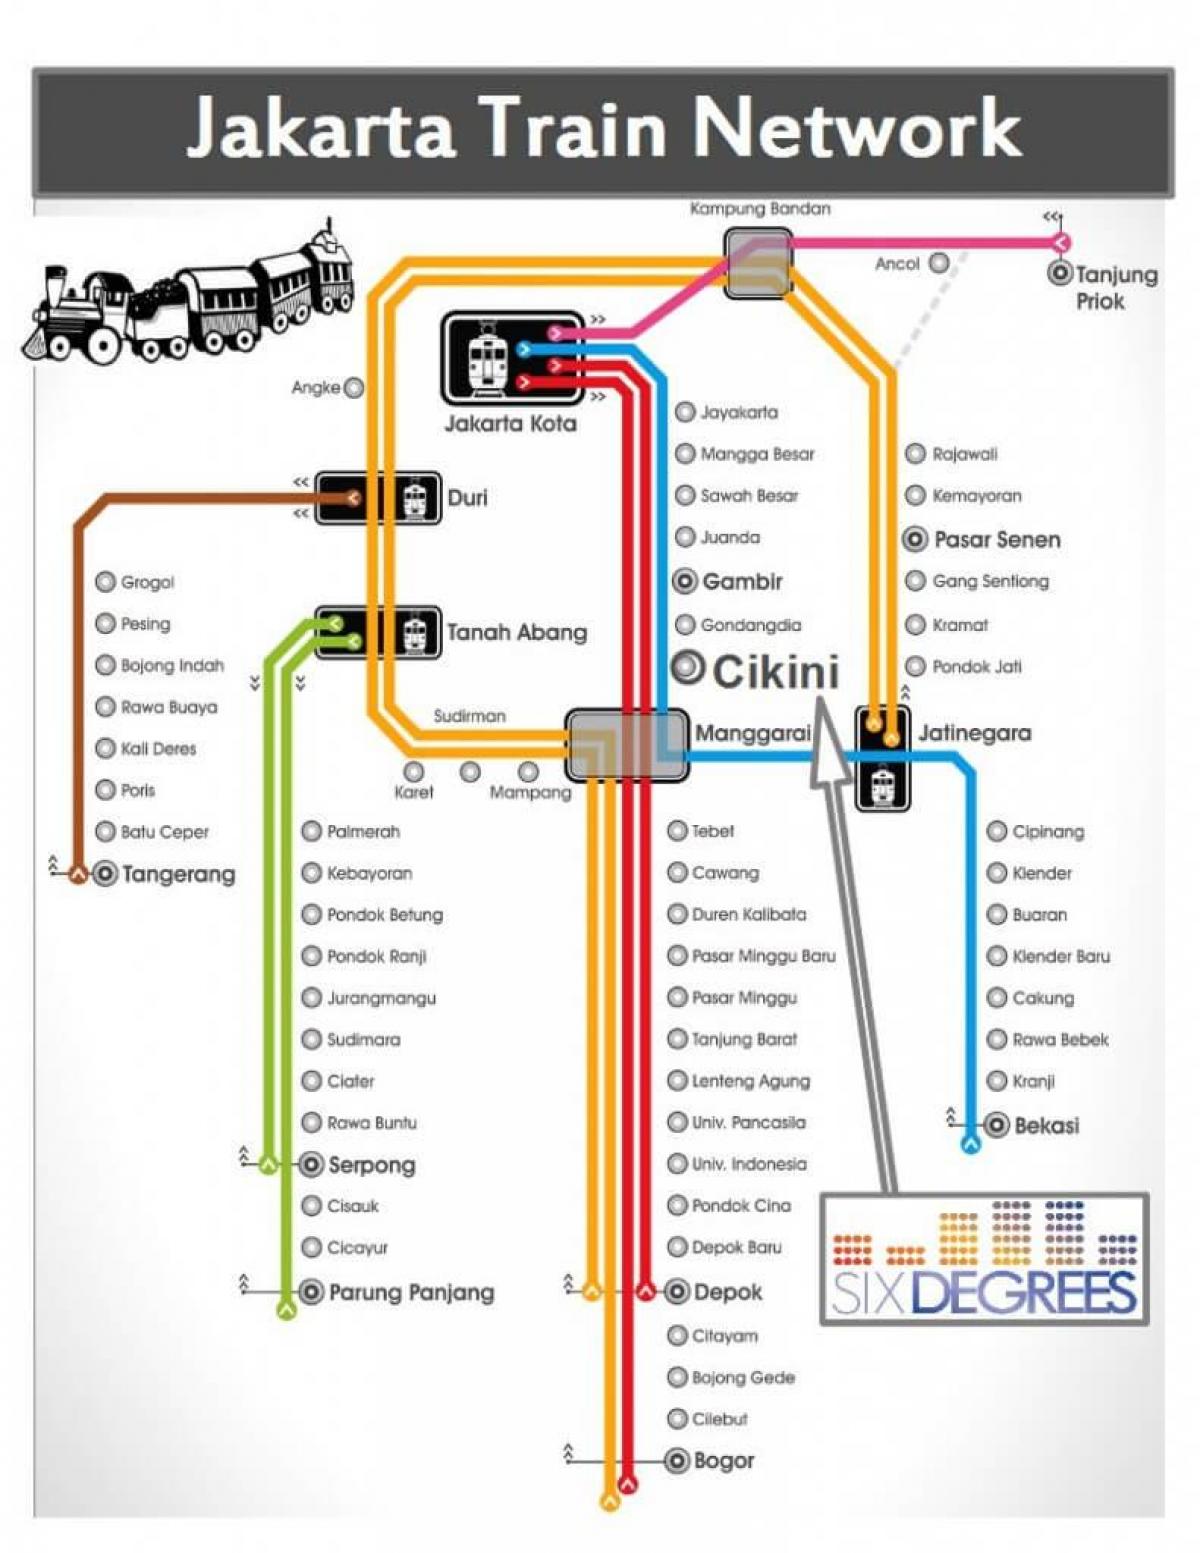 Џакарта мапа железнице